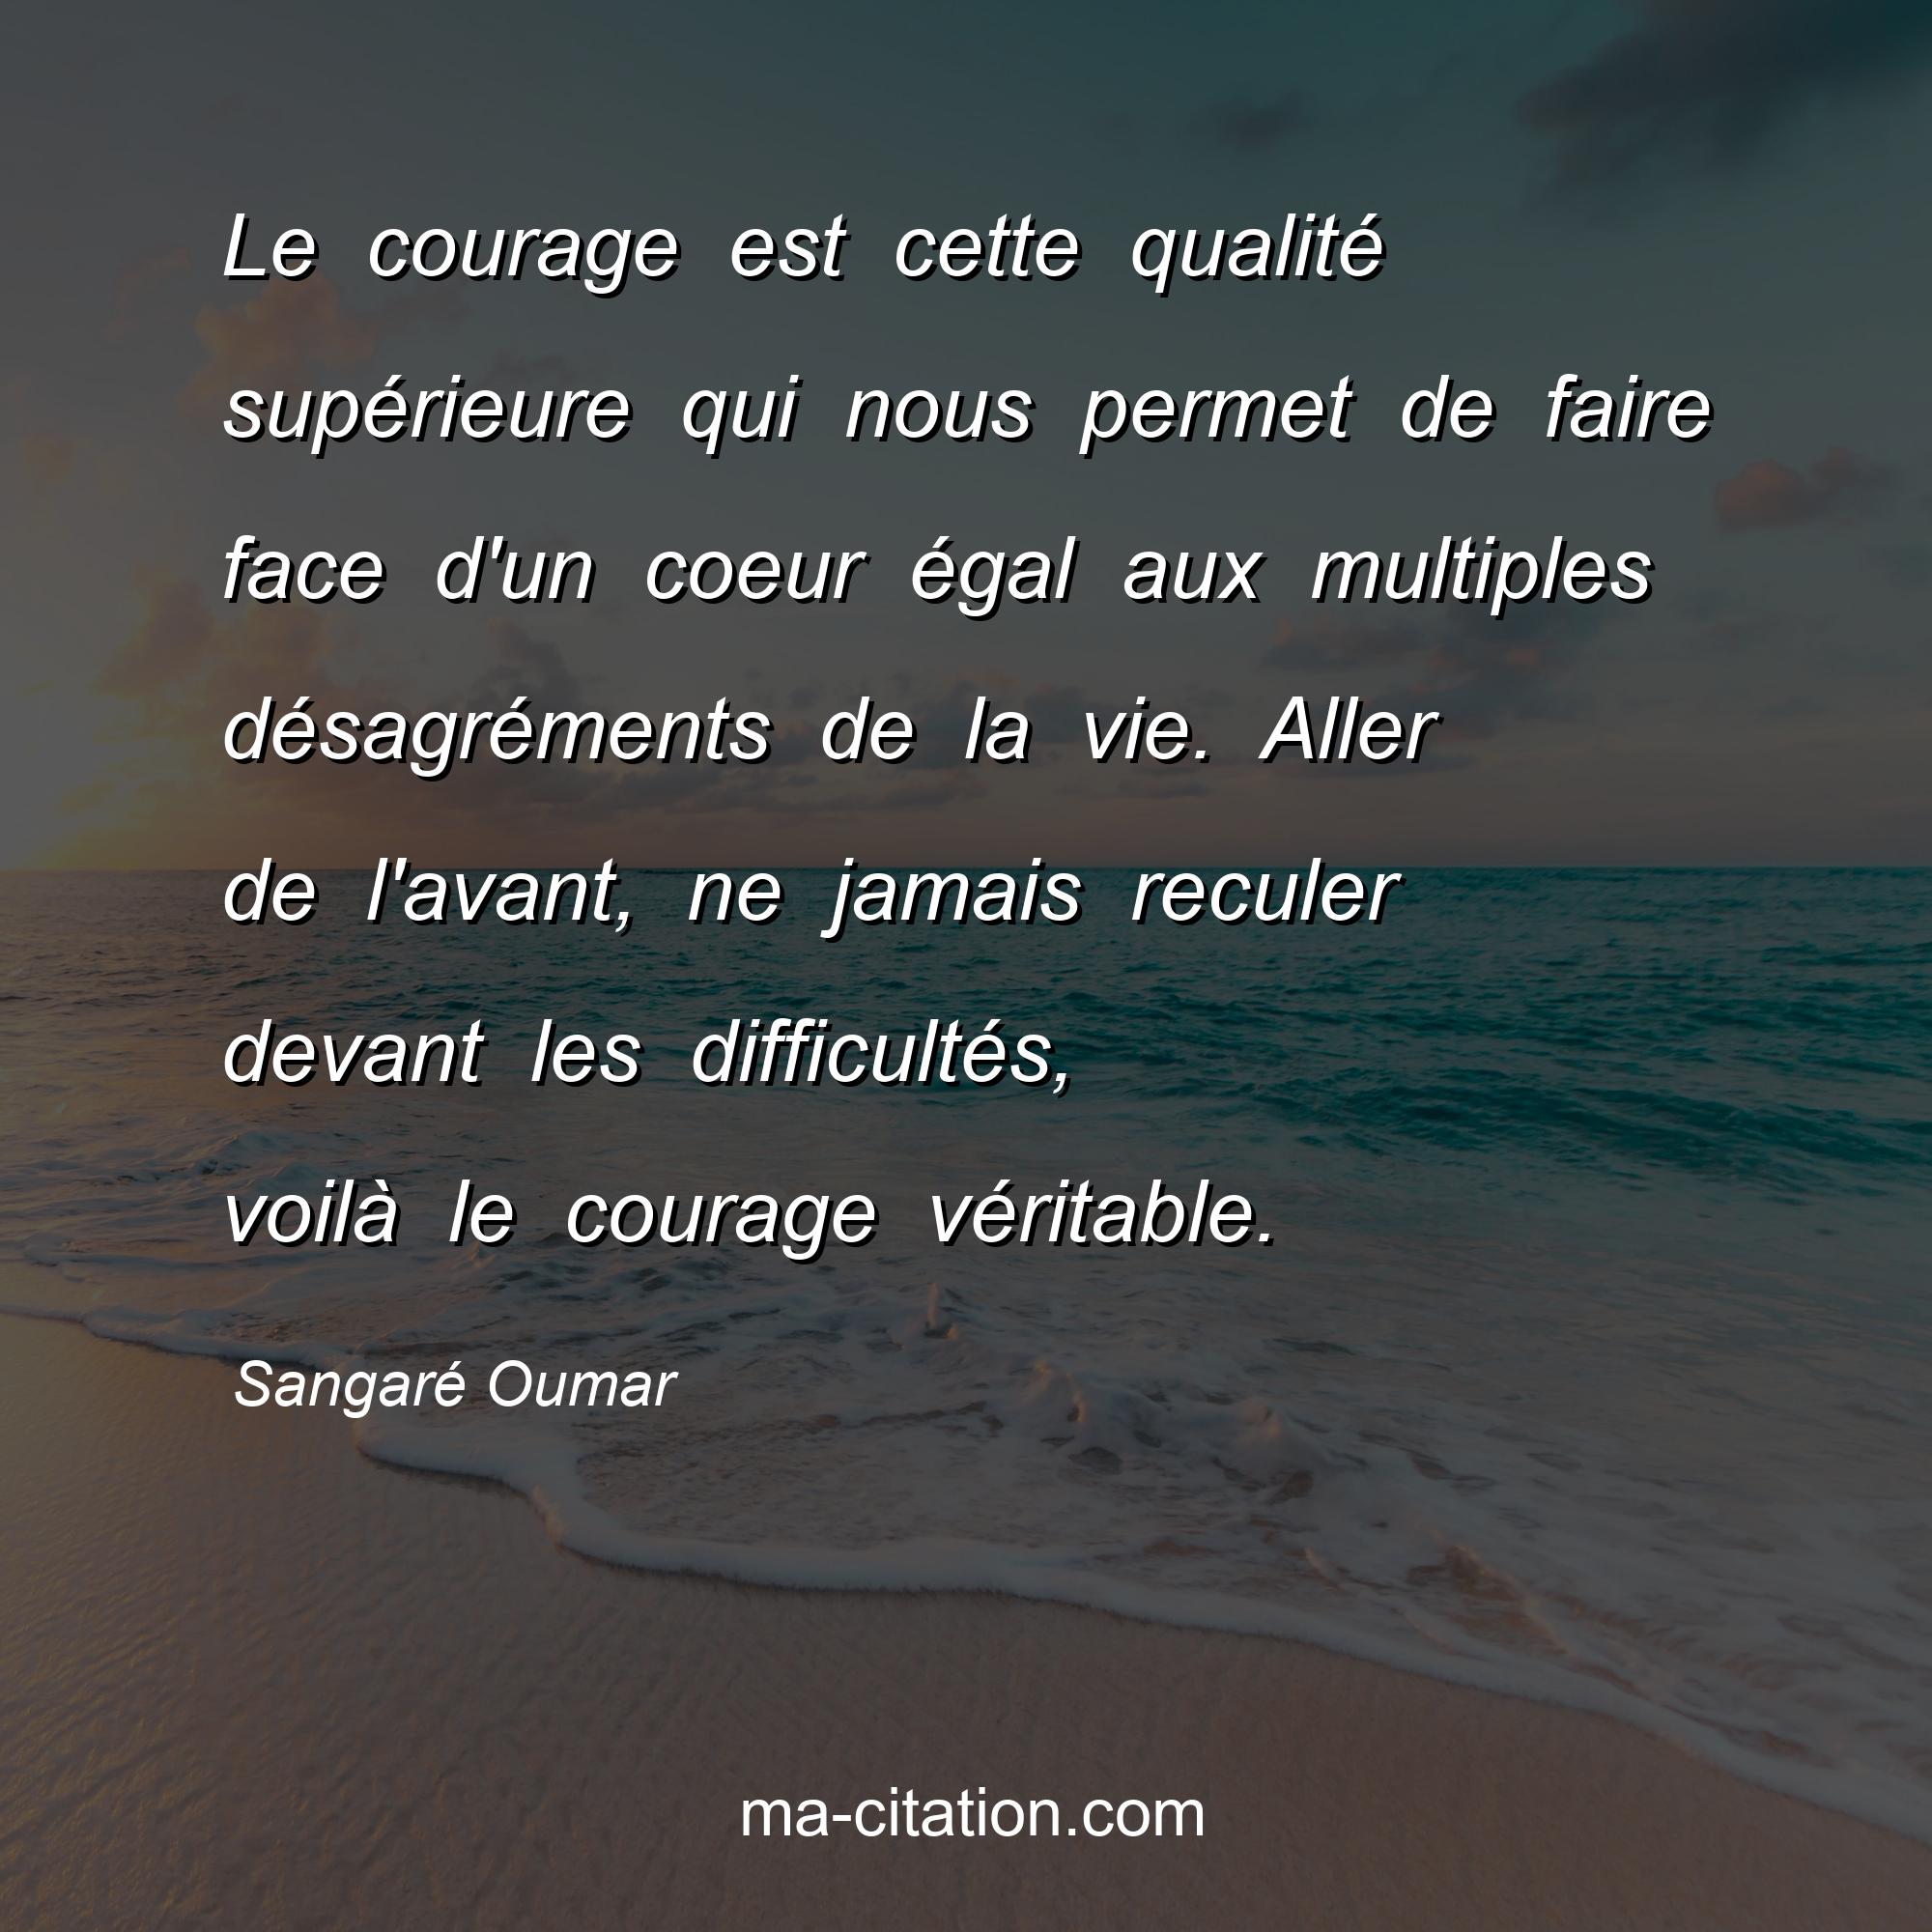 Sangaré Oumar : Le courage est cette qualité supérieure qui nous permet de faire face d'un coeur égal aux multiples désagréments de la vie. Aller de l'avant, ne jamais reculer devant les difficultés, voilà le courage véritable.